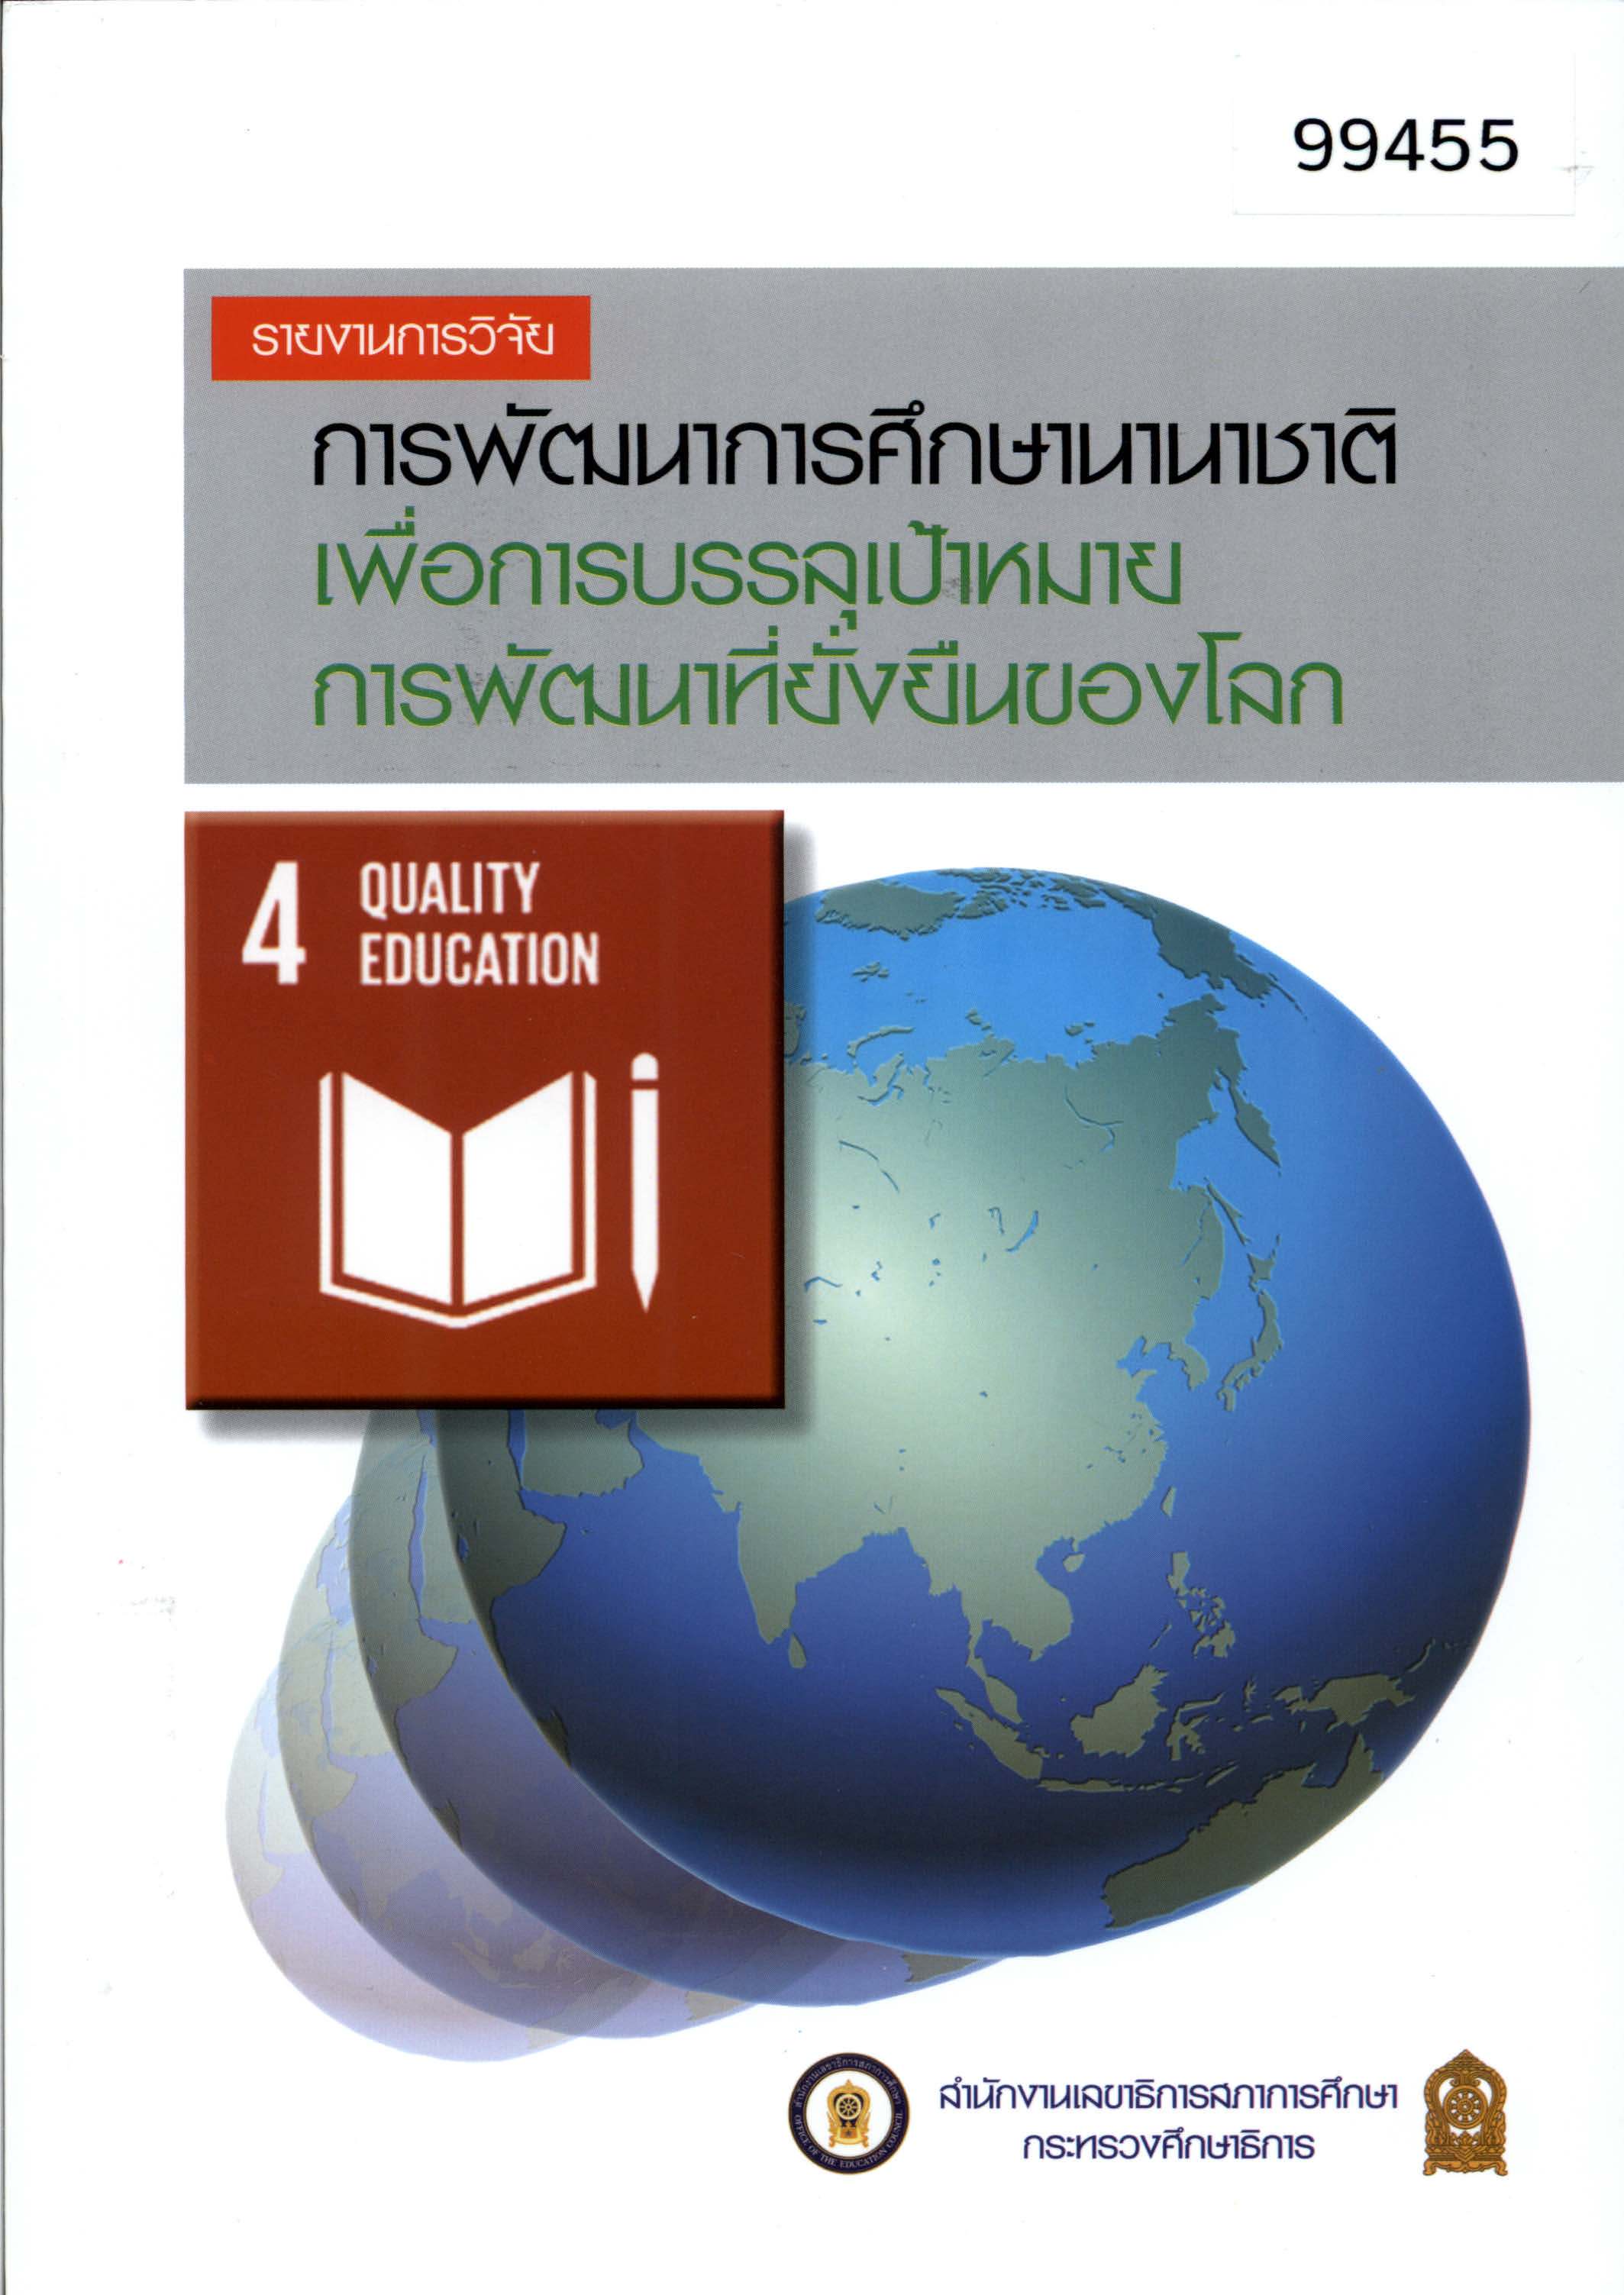 รายงานการวิจัยการพัฒนาการศึกษานานาชาติเพื่อการบรรลุเป้าหมายการพัฒนาที่ยั่งยืนของโลก